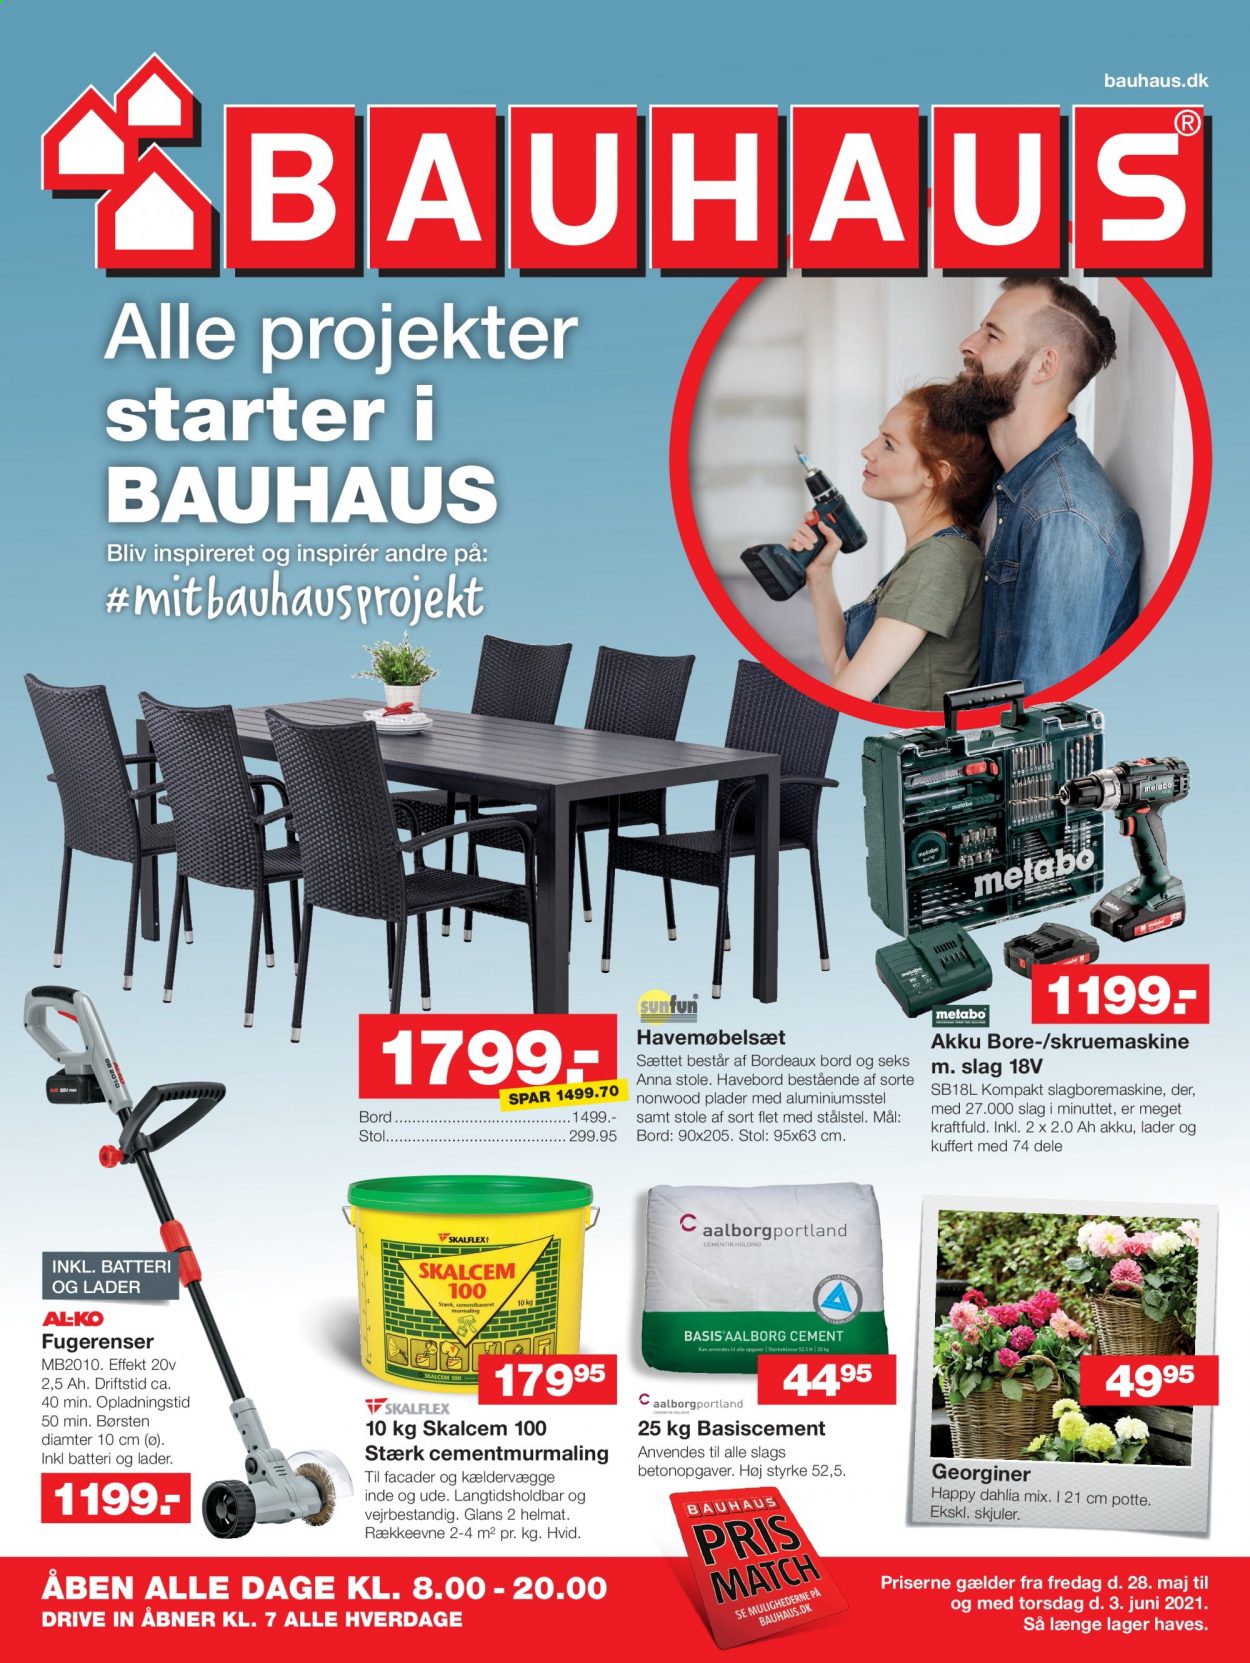 thumbnail - Bauhaus tilbud  - 28.5.2021 - 3.6.2021 - tilbudsprodukter - bord, stol, skruemaskine. Side 1.